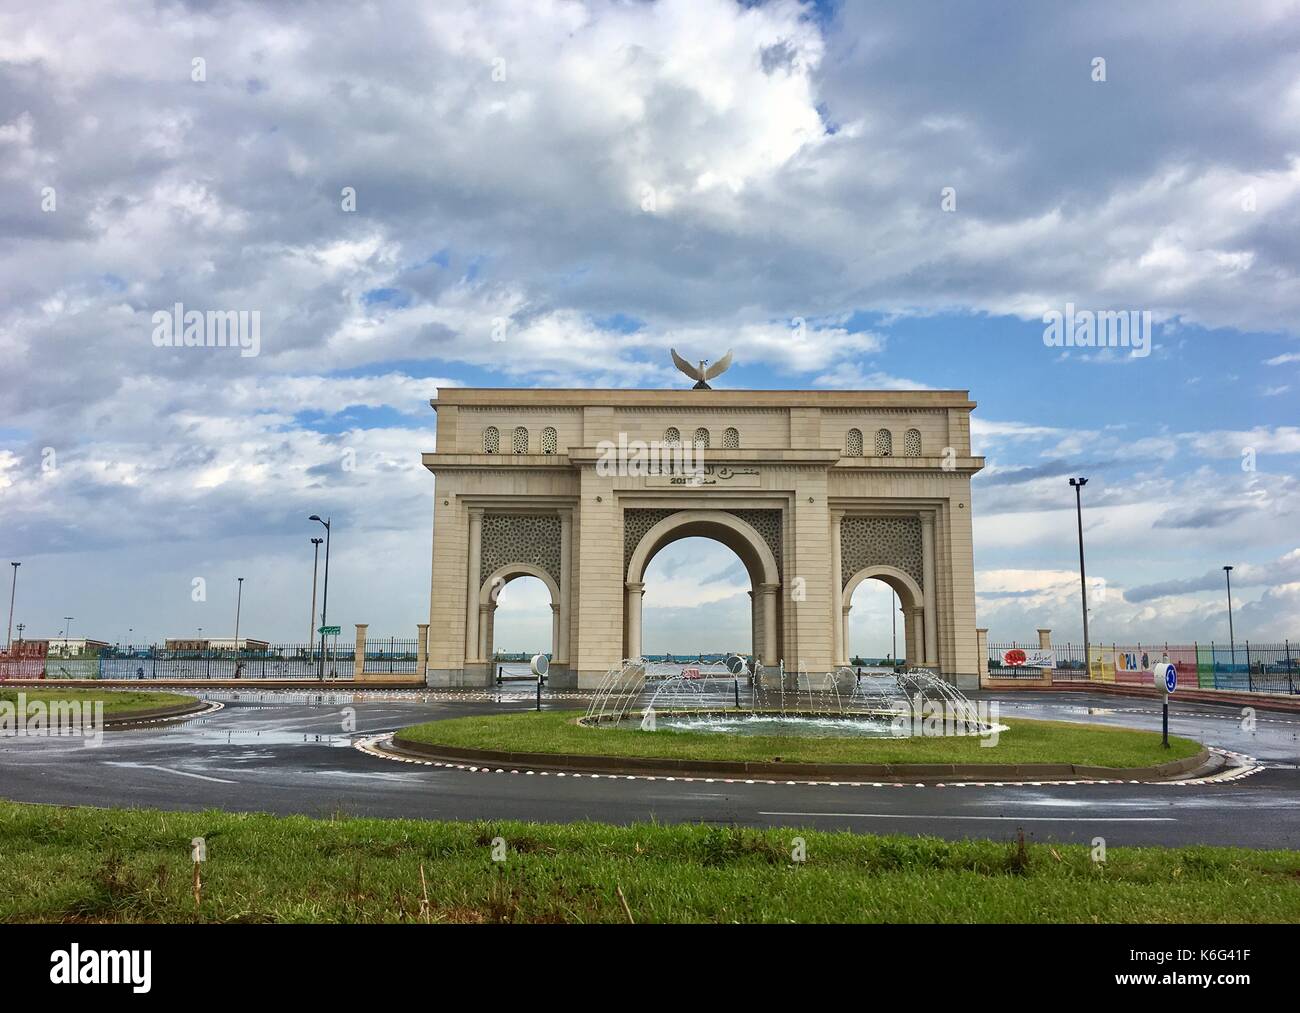 Sablette cancello in Algeri costruito 2015.il gate viene campionato come simbolo di gloria francese arco di trionfo Architecture di Parigi.gate si trova in riva al mare a. Foto Stock